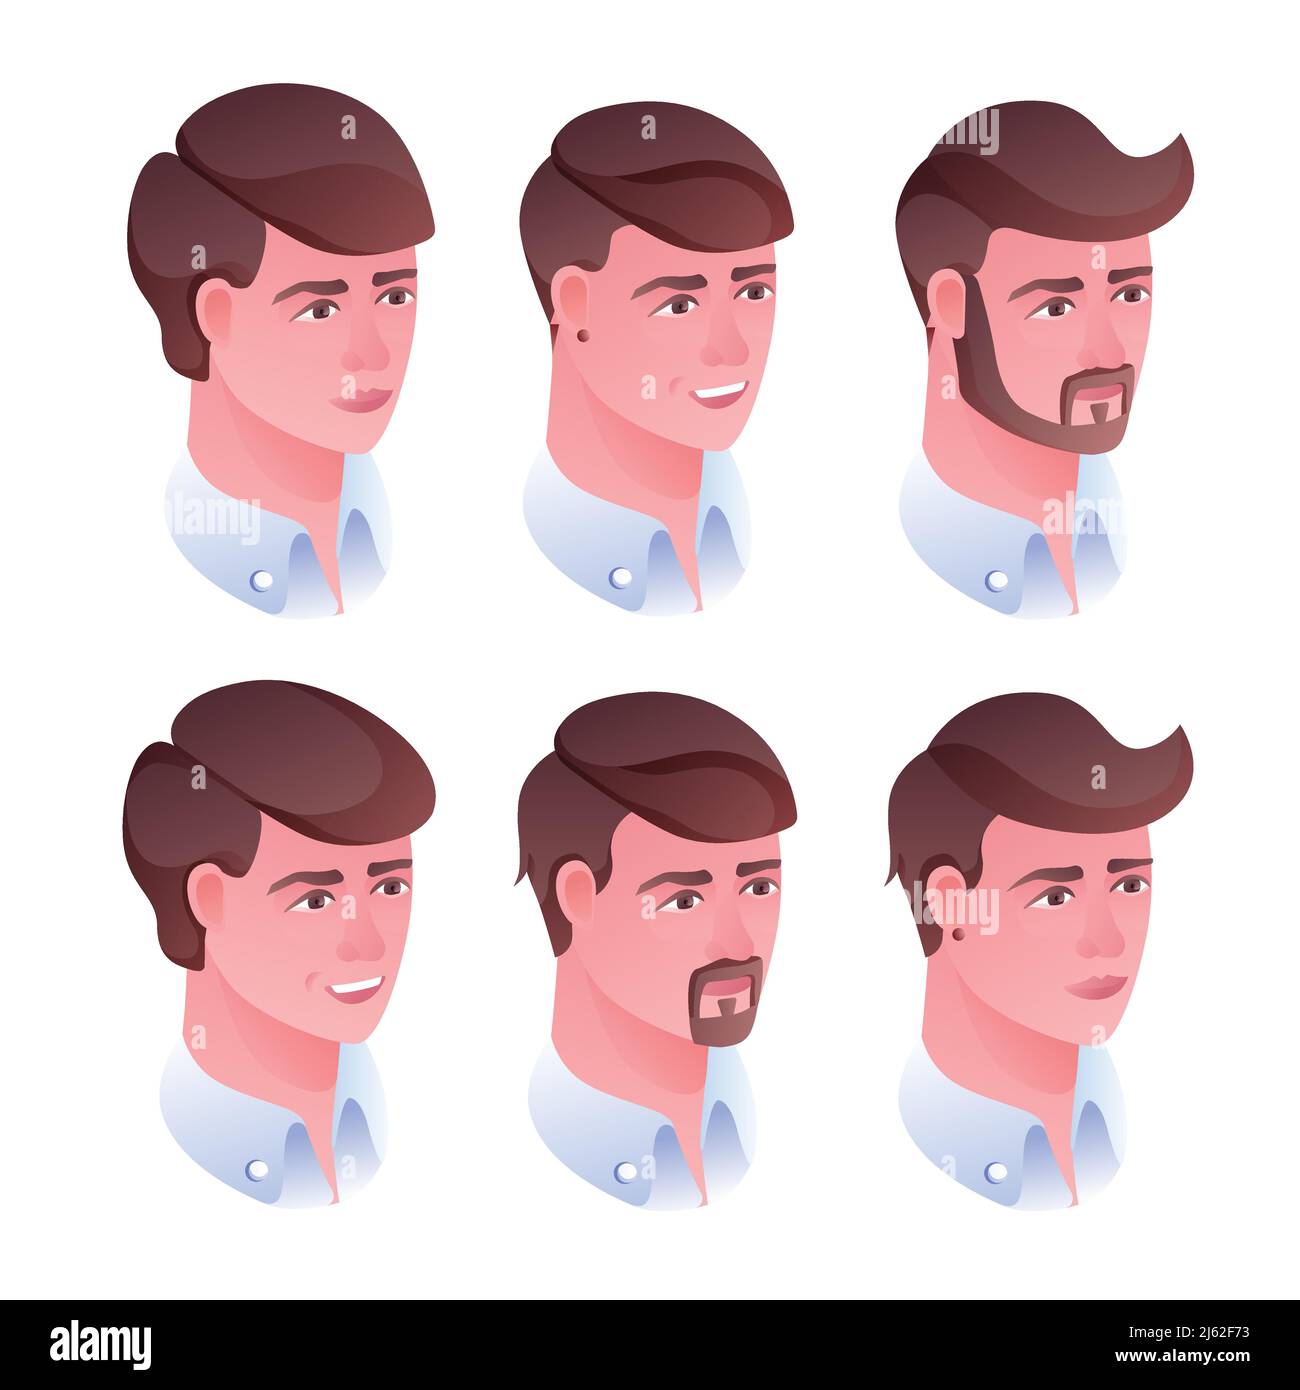 Mann Kopf Frisur Vektor Illustration für Friseursalon oder Friseursalon. Isoliertes Set von männlichen Gesichtern mit Haarschnitten und Bart- oder Schnurrbart-Rasur Stock Vektor